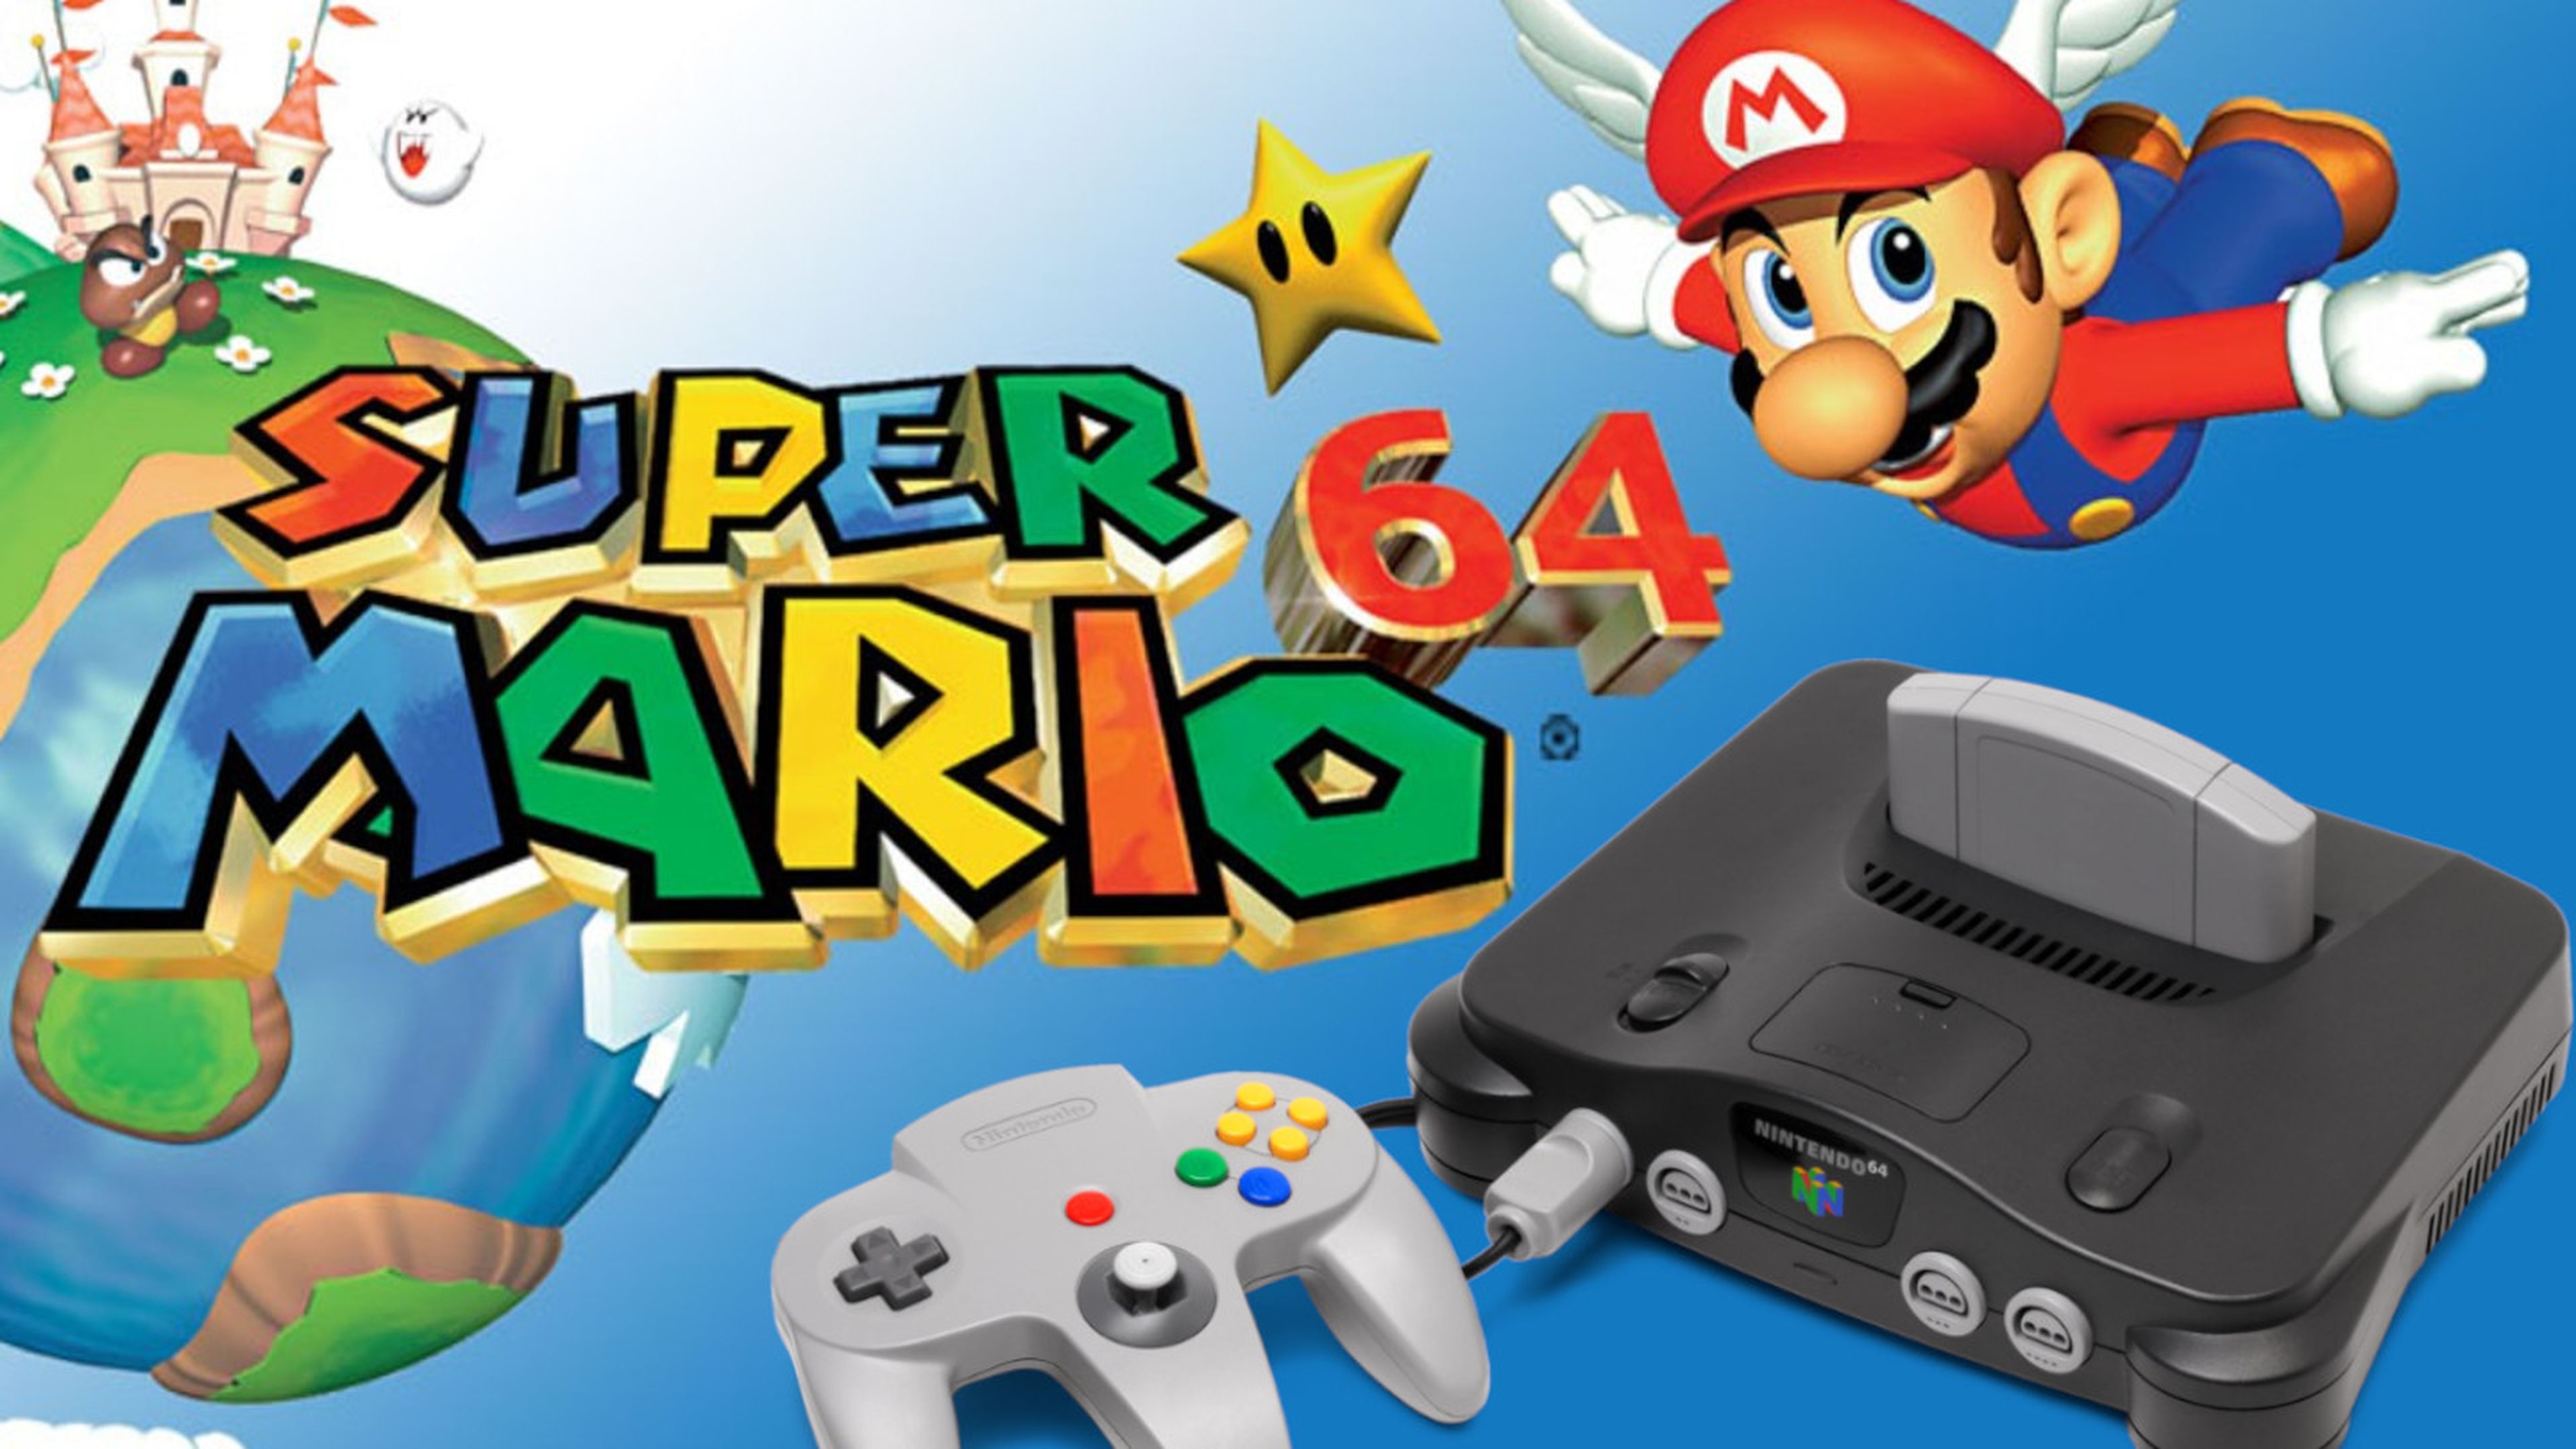 Nintendo 64 Super Mario 64